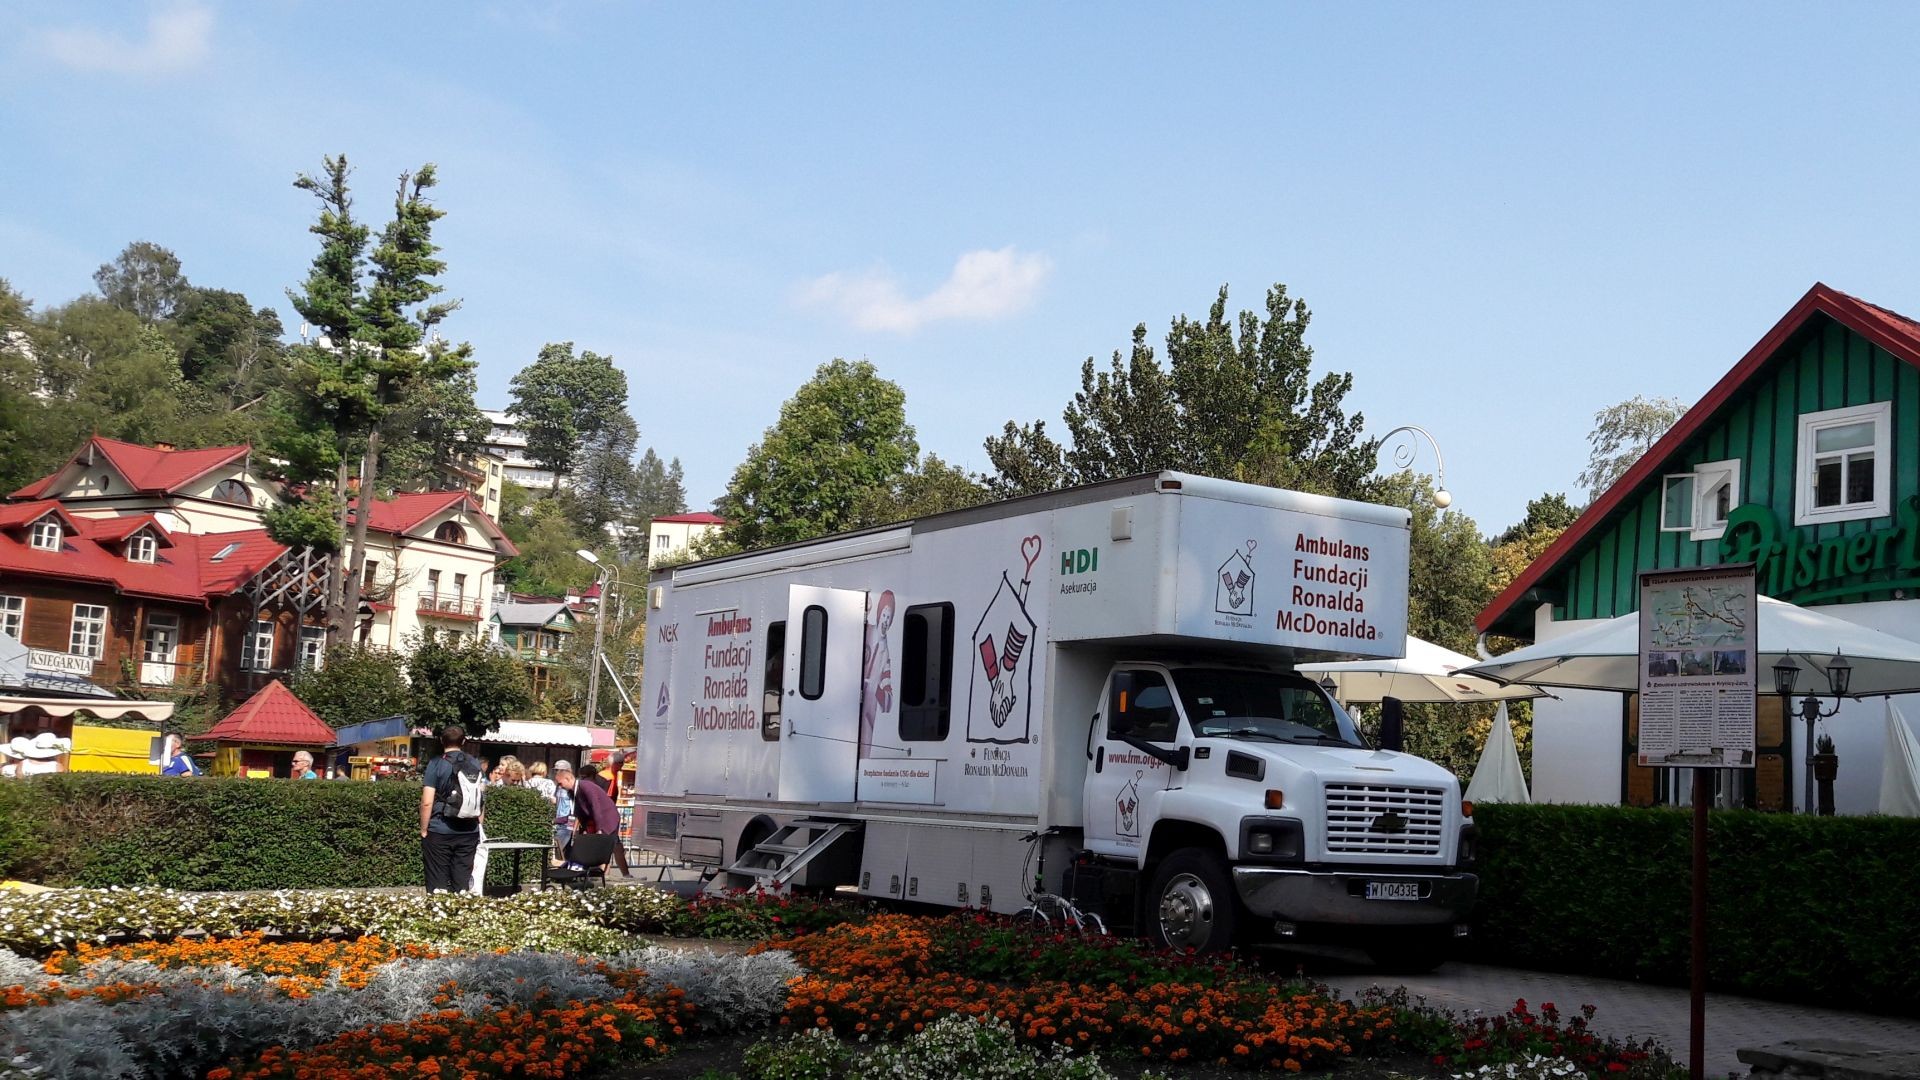 NIE nowotworom u dzieci - ambulans Fundacji Ronalda McDonalda w Krynicy-Zdroju